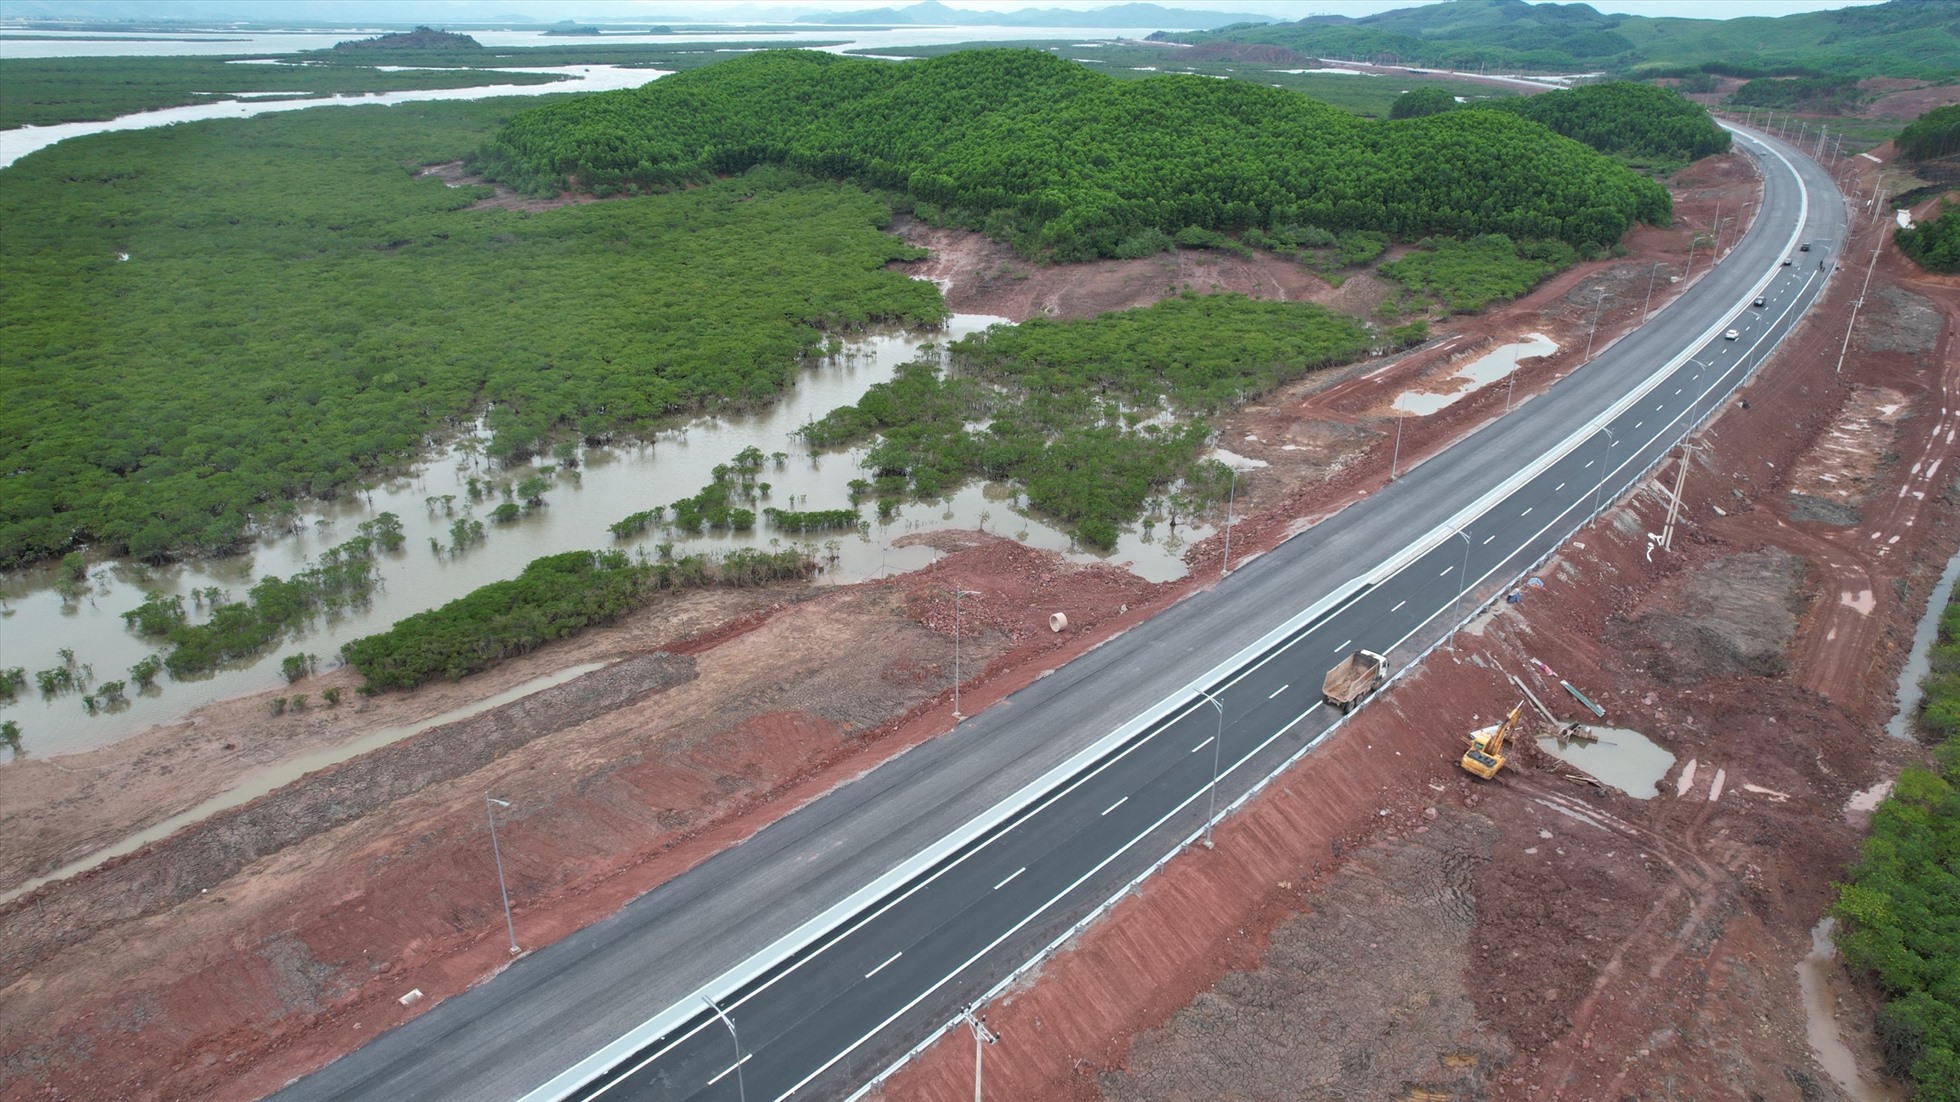 Cao tốc Vân Đồn – Móng Cái đi vào hoạt động sẽ hoàn thiện tuyến cao tốc từ Lào Cai đi qua Hà Nội, Hải Phòng đến TP Móng Cái, tạo thành tuyến cao tốc liền mạch dài nhất Việt Nam với chiều dài lên đến gần 600km. Ảnh: CTV